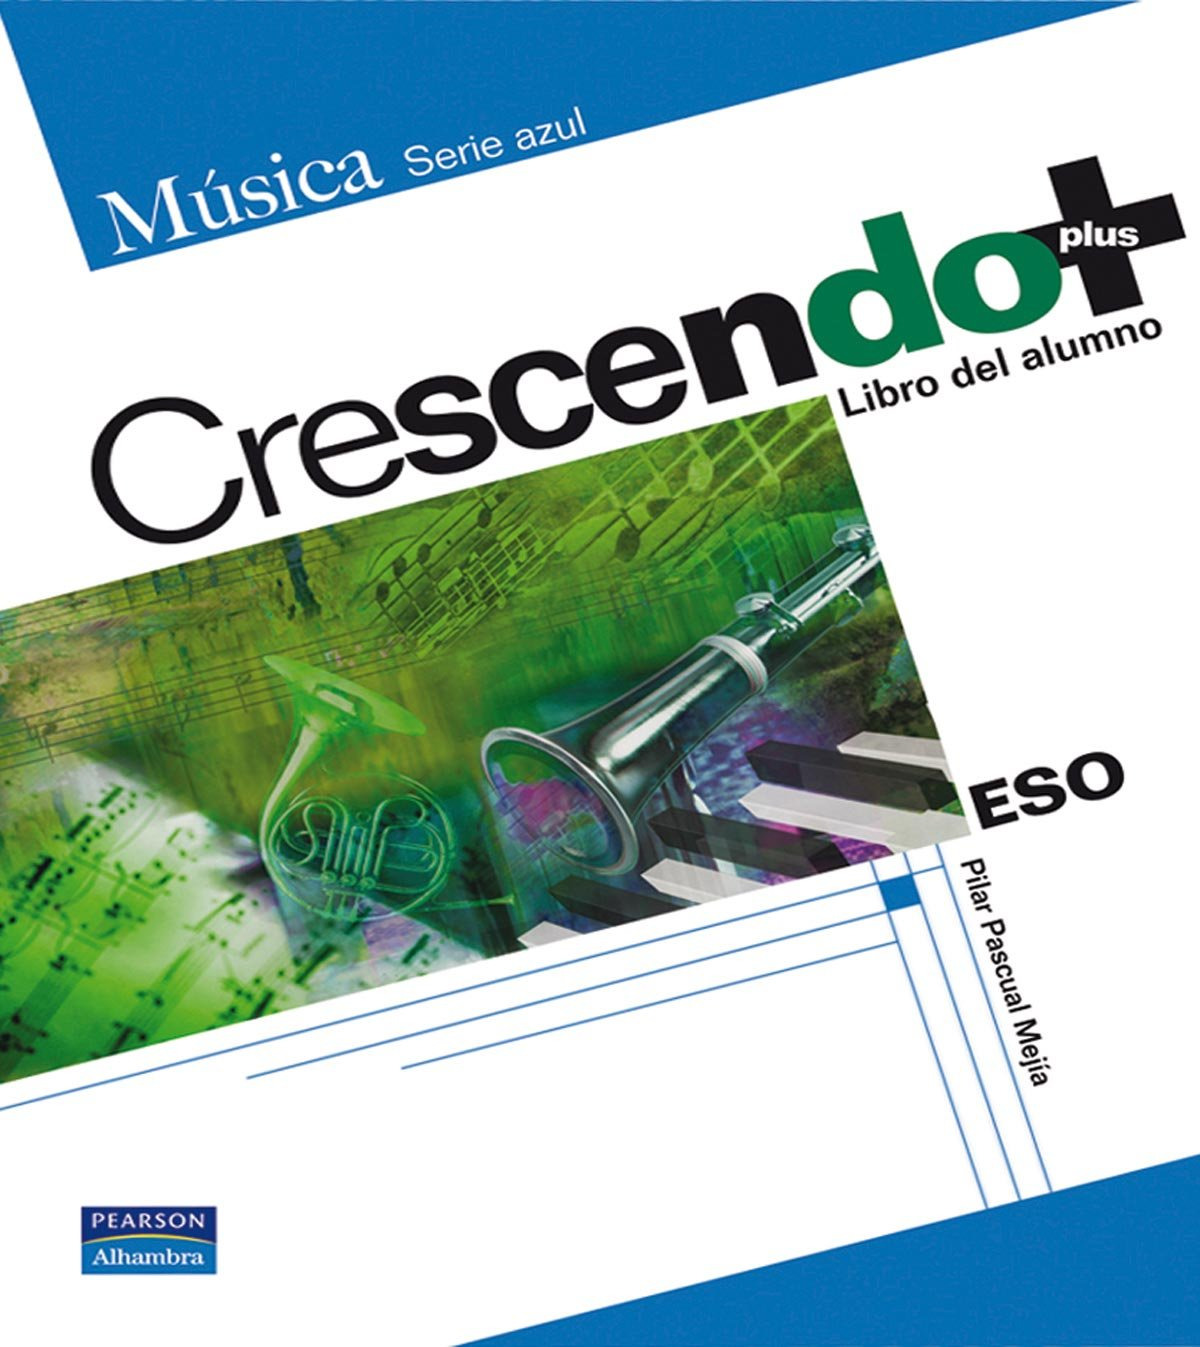 (07).crescendo plus (libro) -musica- (serie azul) - Pascual Mejía, Pilar